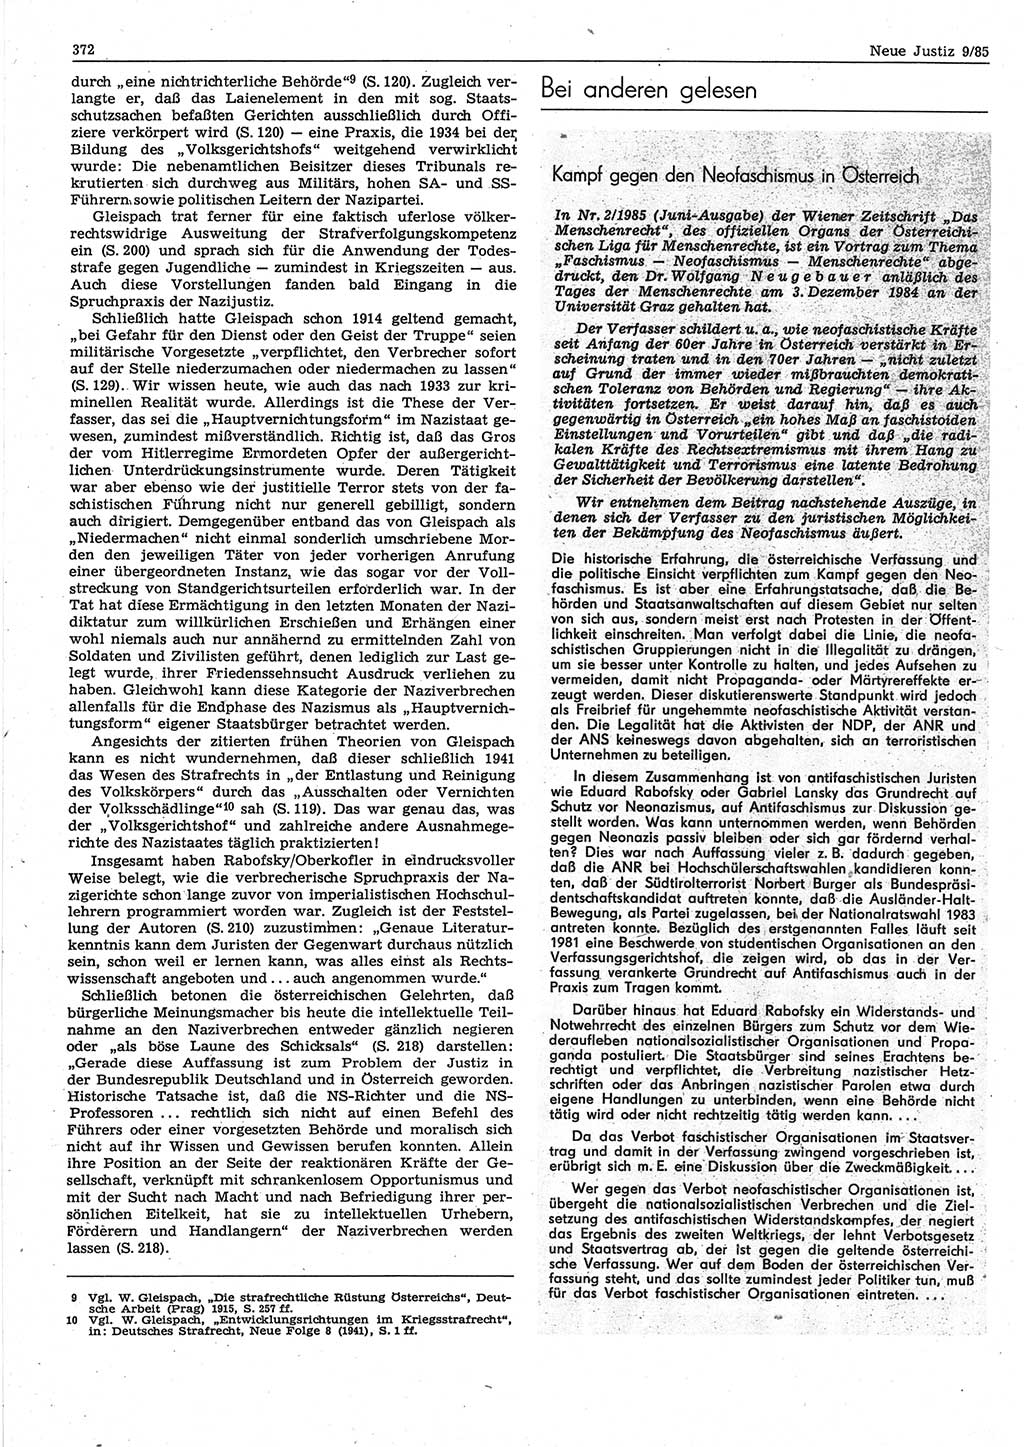 Neue Justiz (NJ), Zeitschrift für sozialistisches Recht und Gesetzlichkeit [Deutsche Demokratische Republik (DDR)], 39. Jahrgang 1985, Seite 372 (NJ DDR 1985, S. 372)